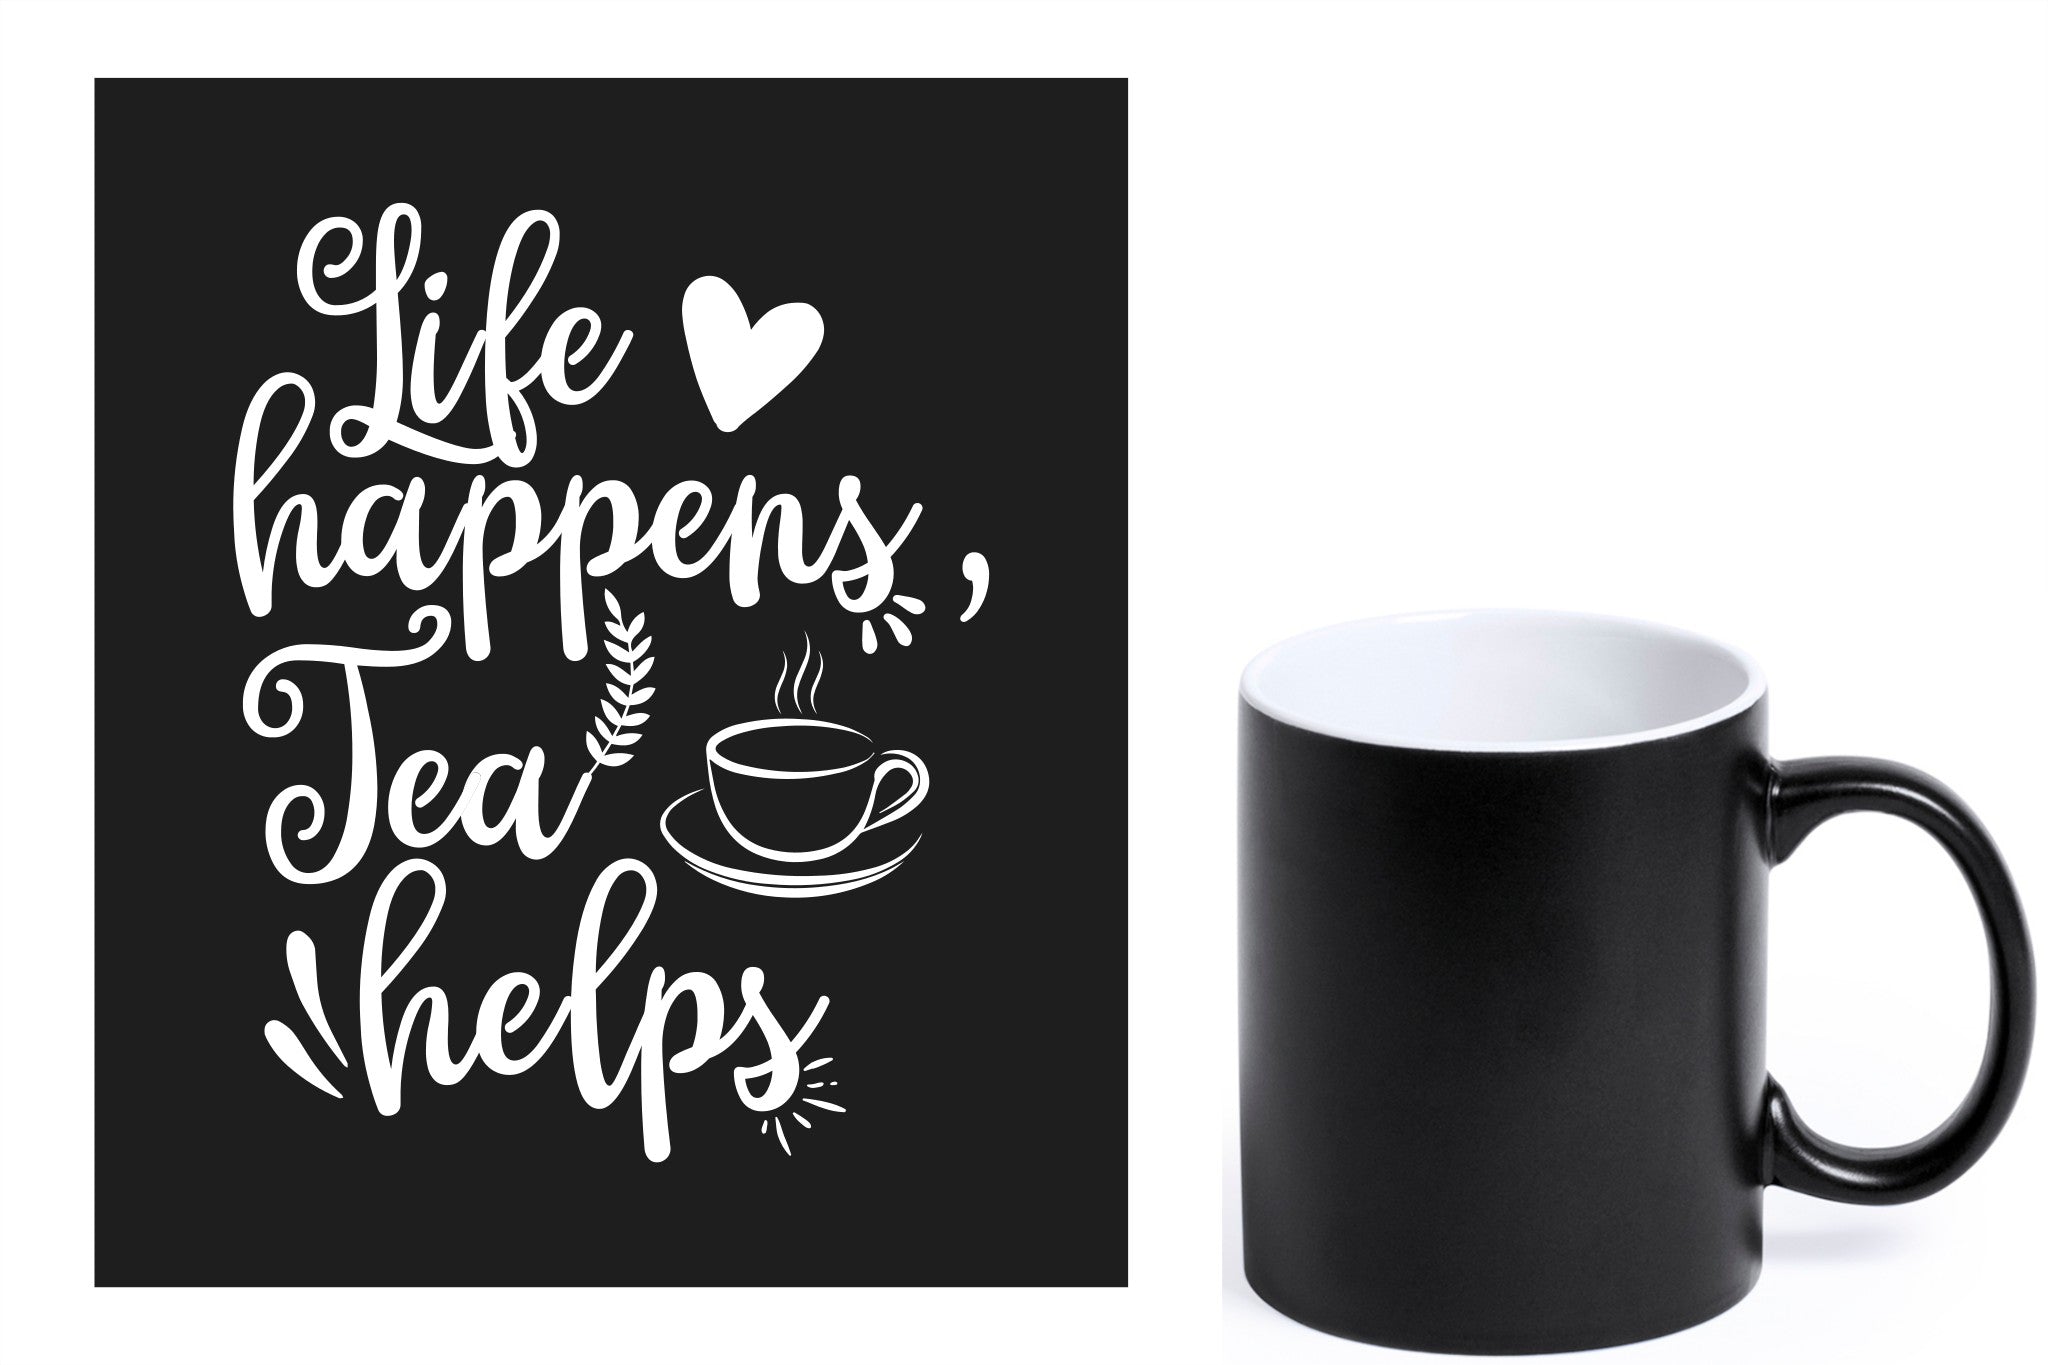 zwarte keramische mok met witte gravure  'Life happens tea helps'.